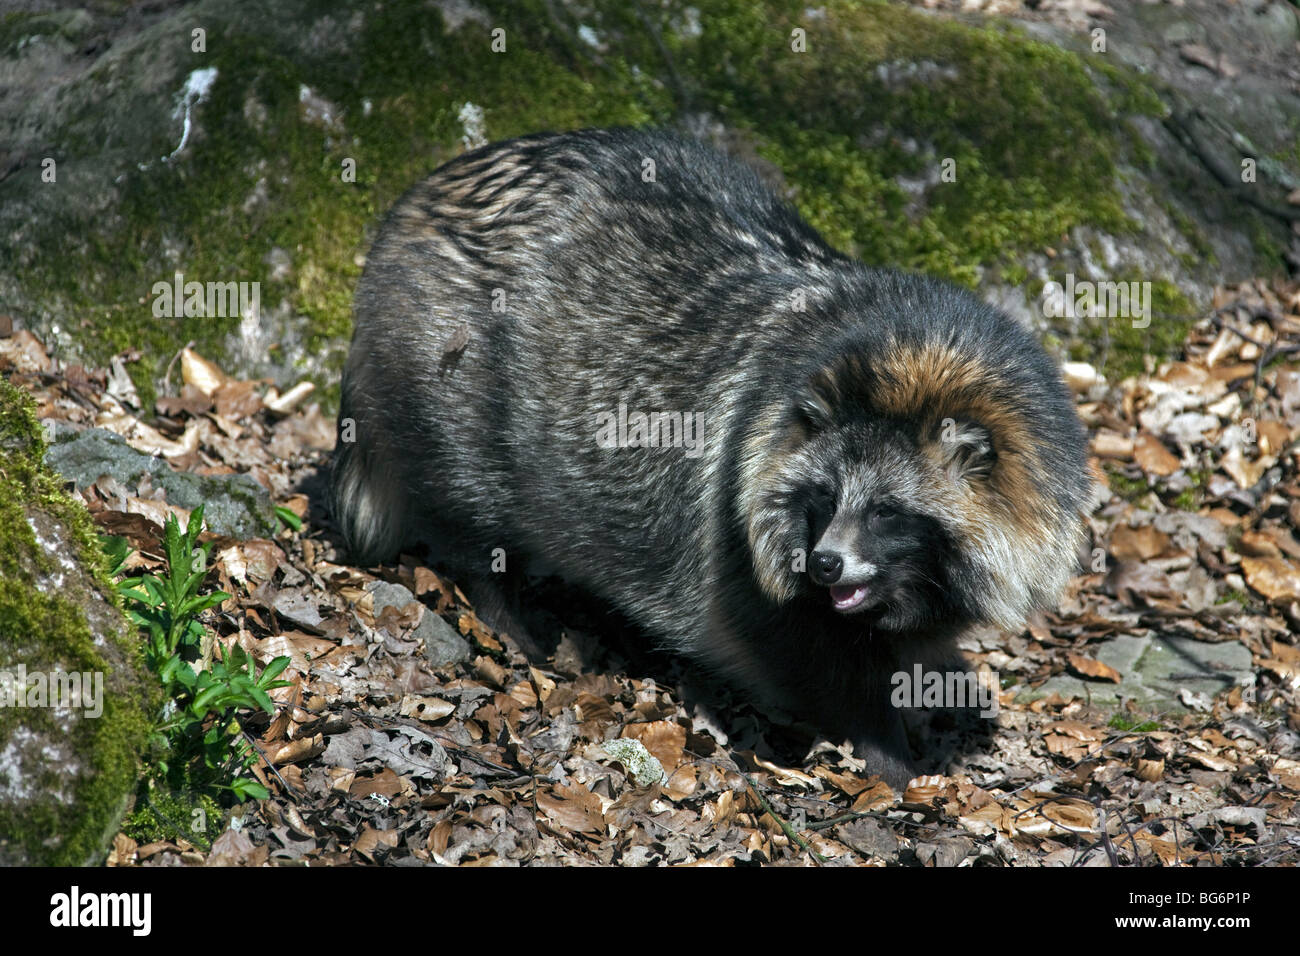 Perro mapache (Nyctereutes procyonoides) Especies invasoras en Alemania, indígenas de Asia Oriental Foto de stock